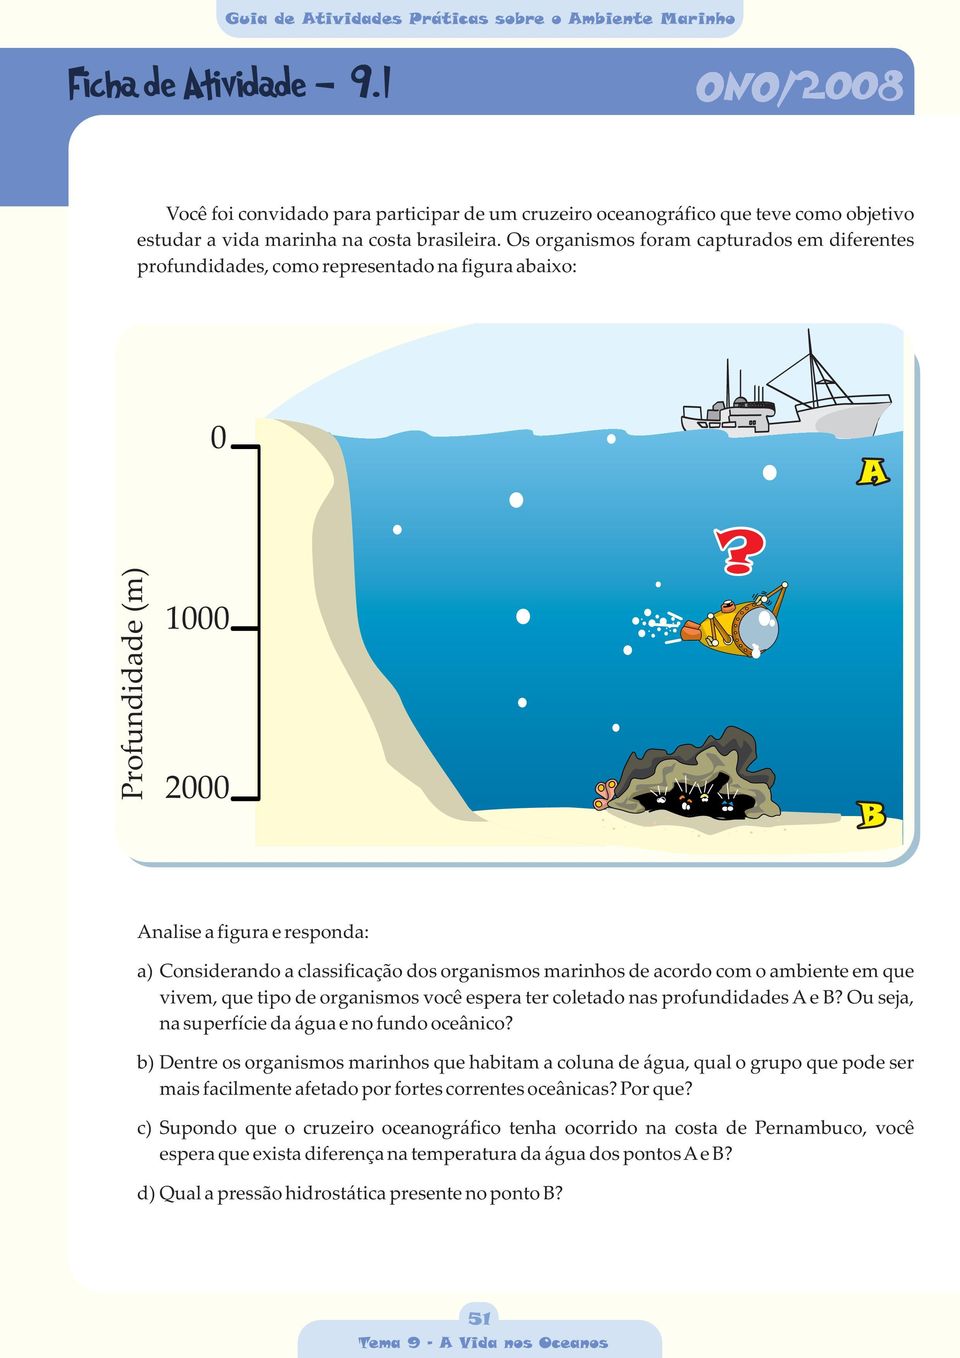 B Analise a figura e responda: a) Considerando a classificação dos organismos marinhos de acordo com o ambiente em que vivem, que tipo de organismos você espera ter coletado nas profundidades A e B?